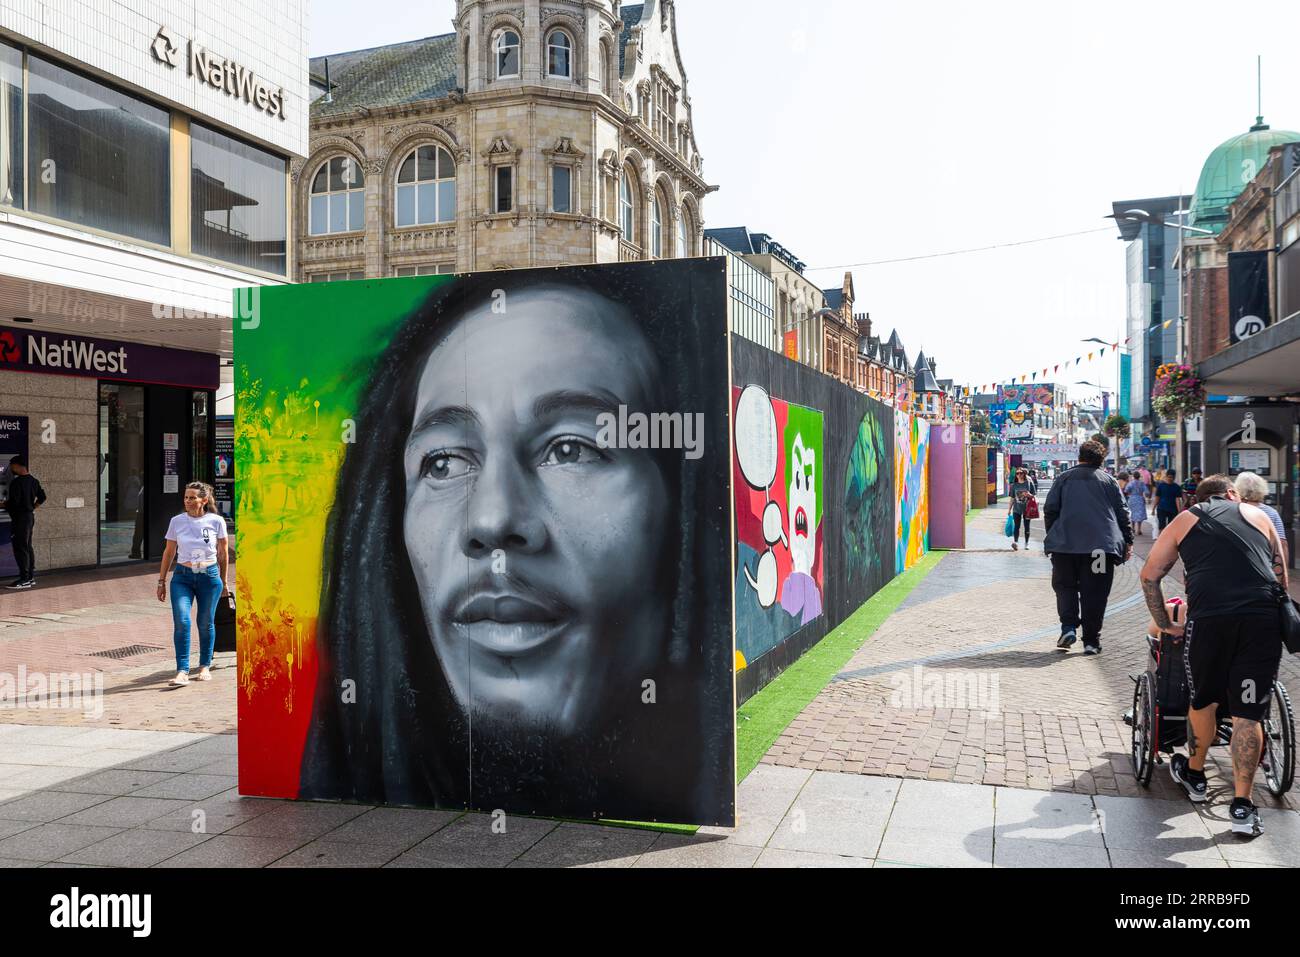 Fait partie de l'événement artistique de Southend City Jam autour de Southend on Sea, Essex, Royaume-Uni. Ressemblance avec Bob Marley dans le quartier commerçant de High Street Banque D'Images